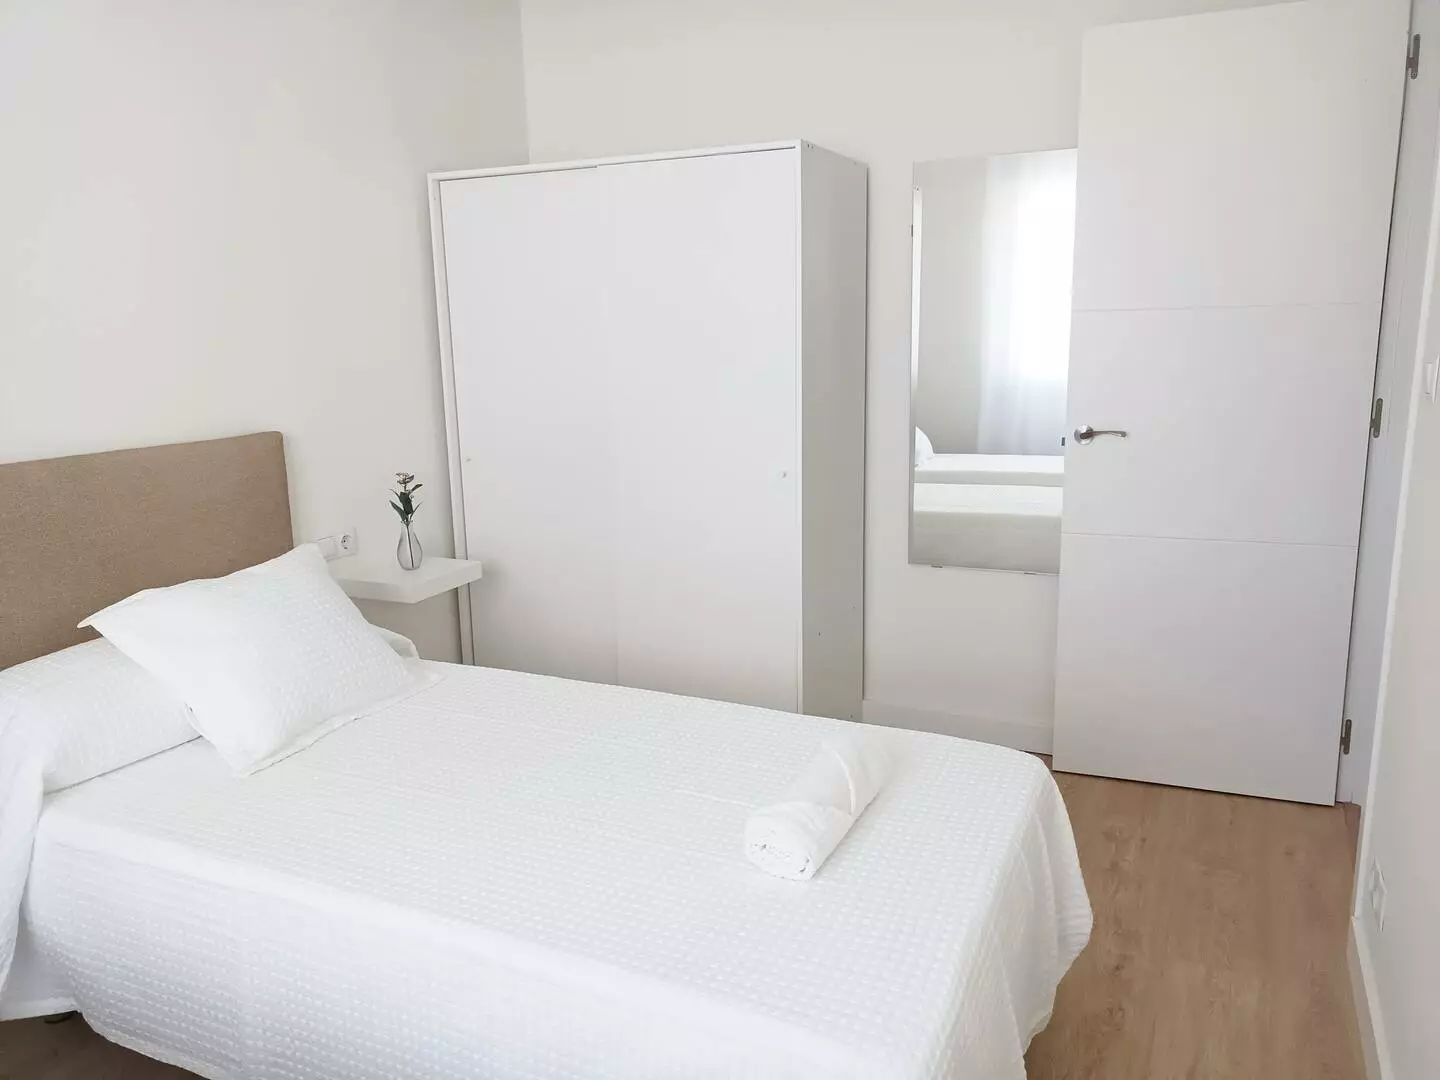 Dormitorio con dos camas , un armario, espejo y mesitas de noche, para alquilar en Cedeira (A Coruña)